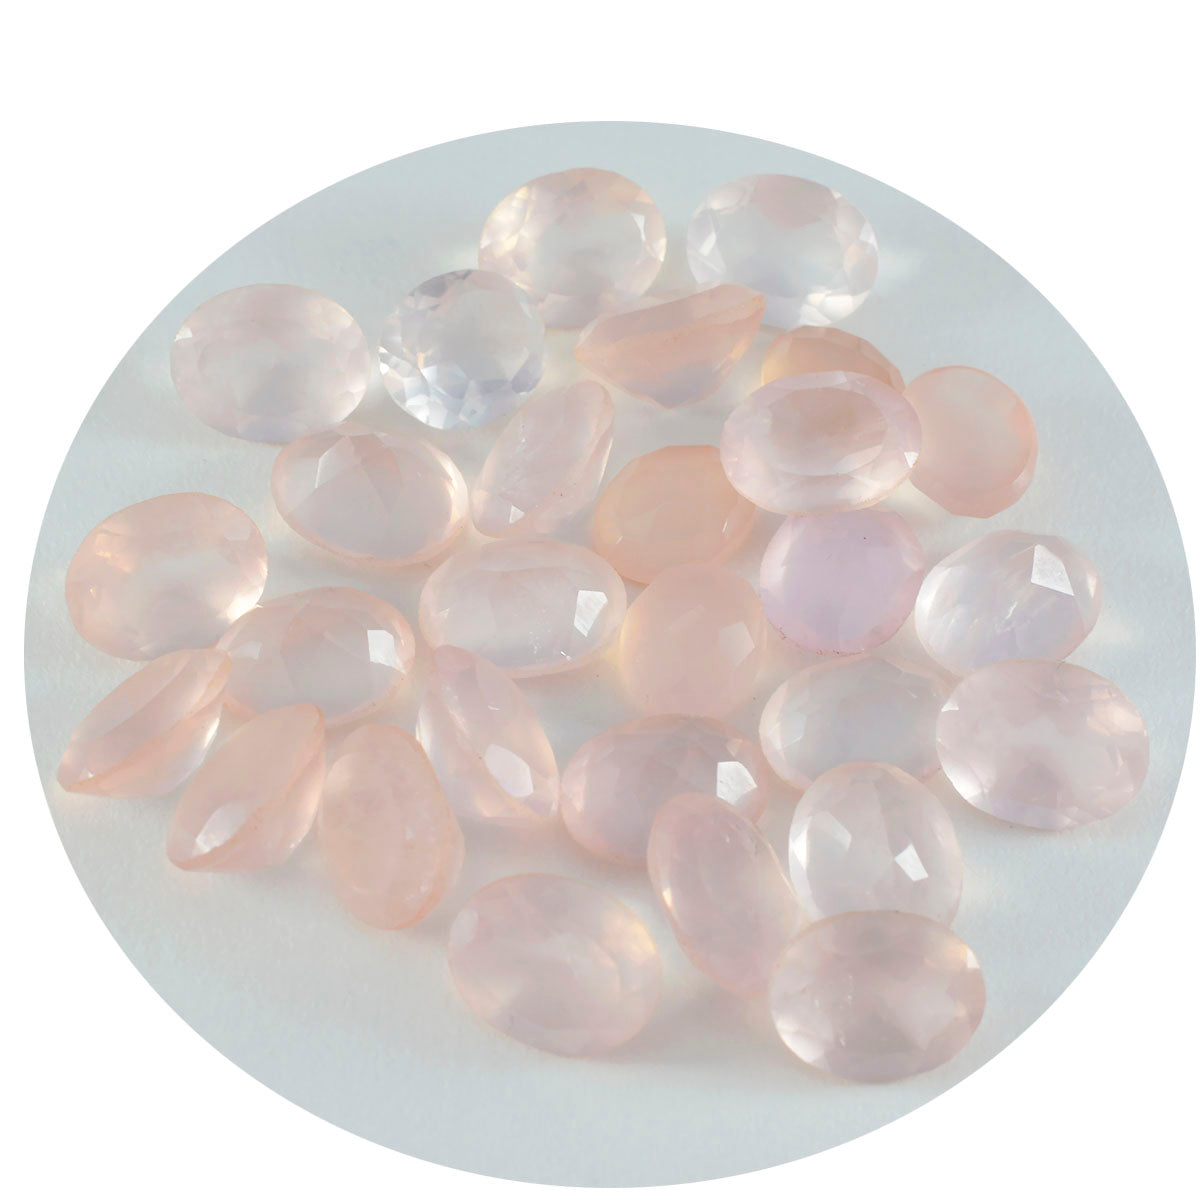 Riyogems 1PC Pink Rose Quartz Faceted 7x9 mm Oval Shape astonishing Quality Stone